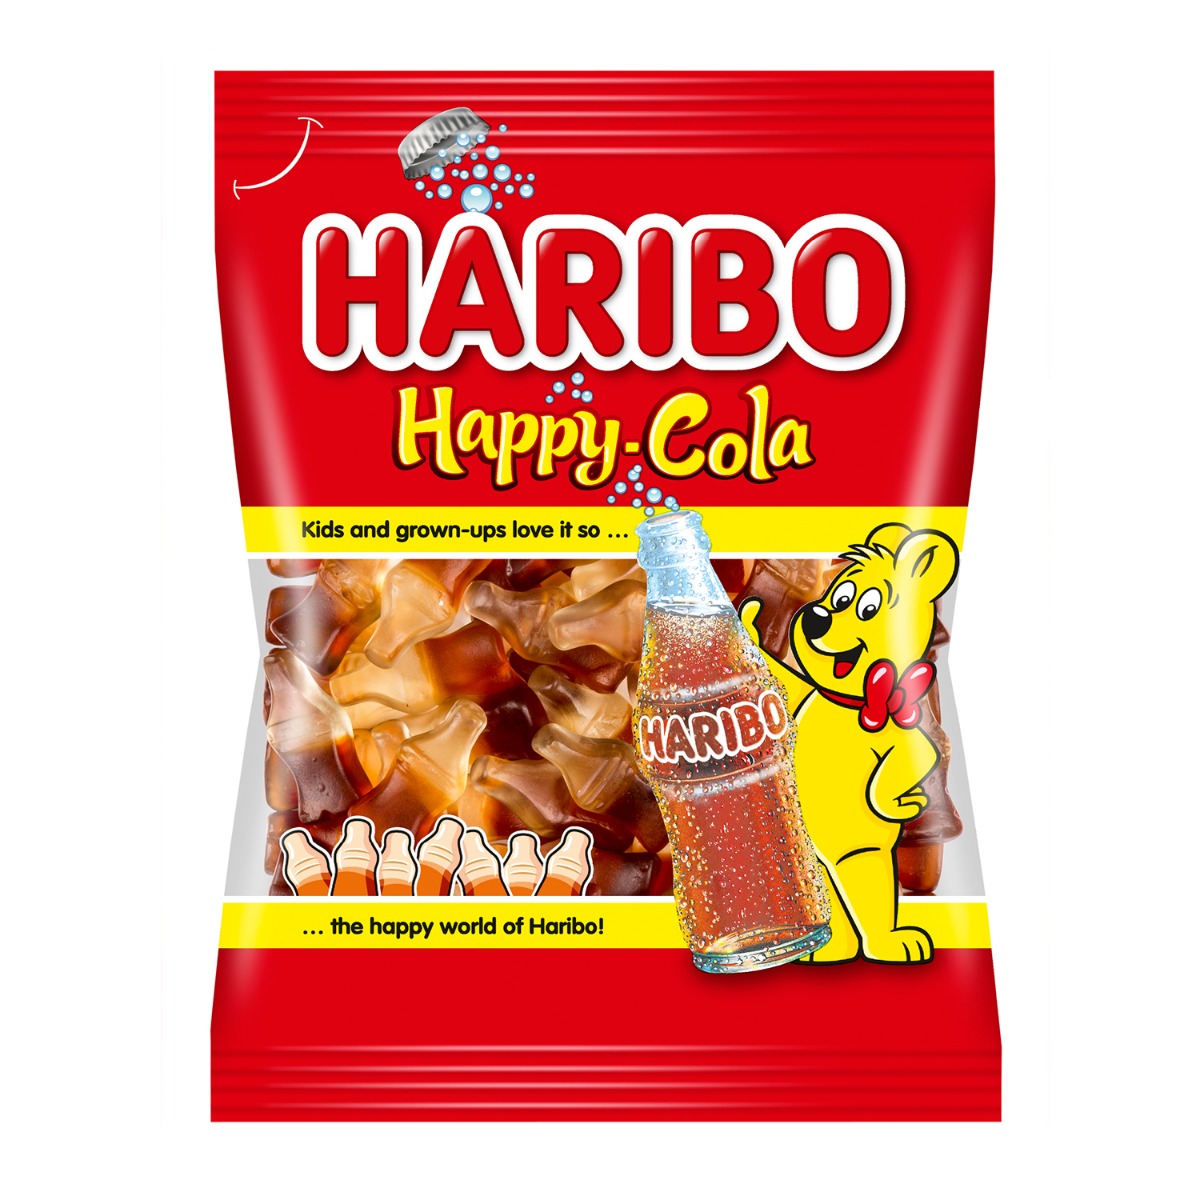 Jeleuri Haribo Happy Cola, 200 g Haribo